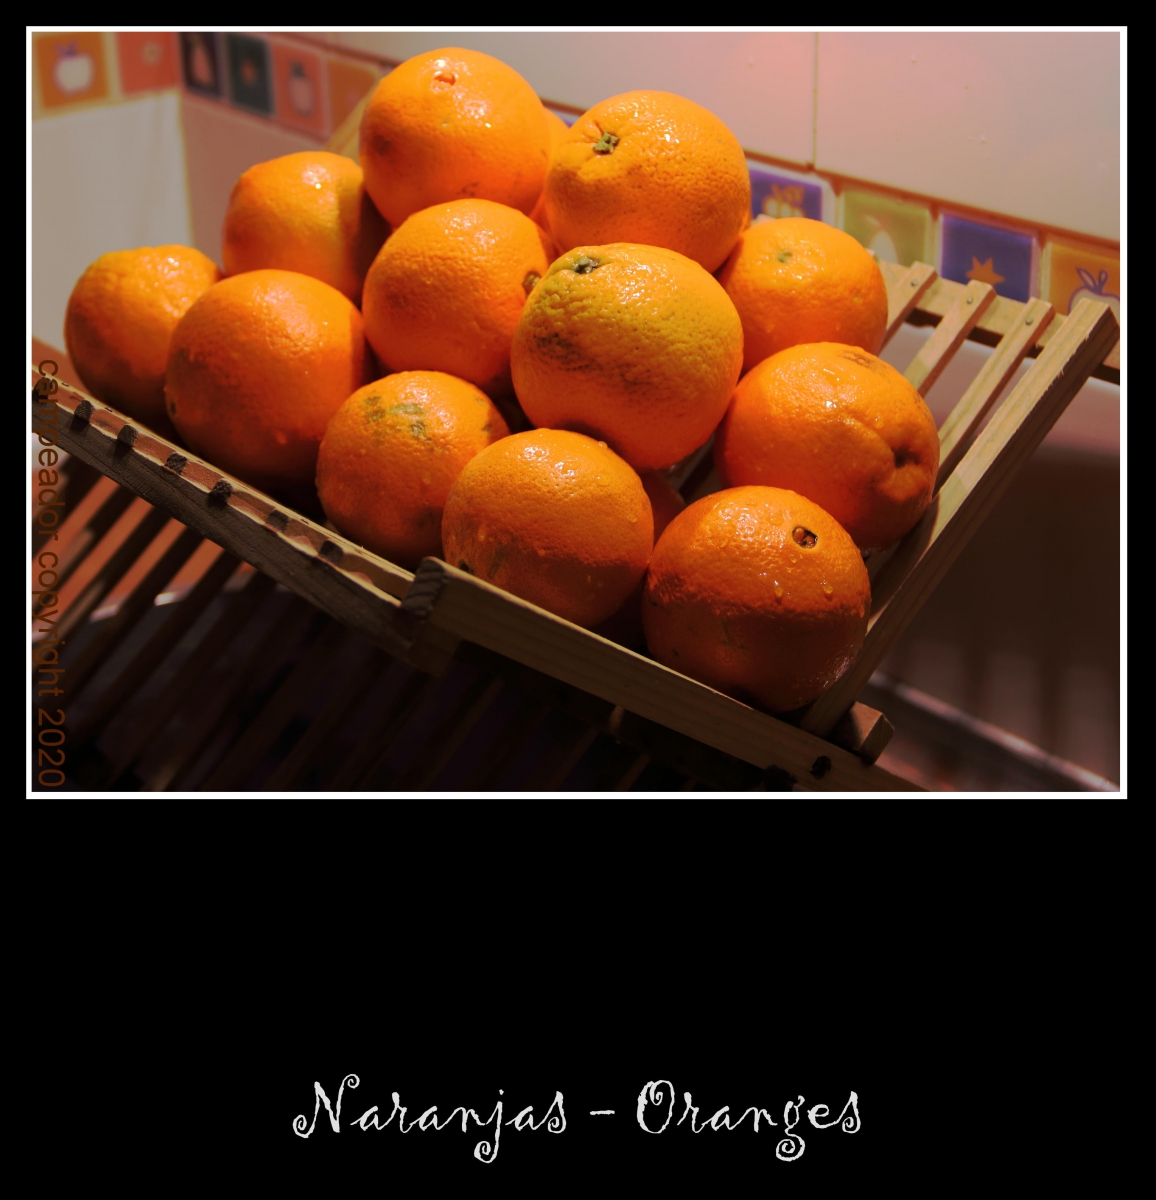 Naranajas - Oranges. Photography by Campeador.